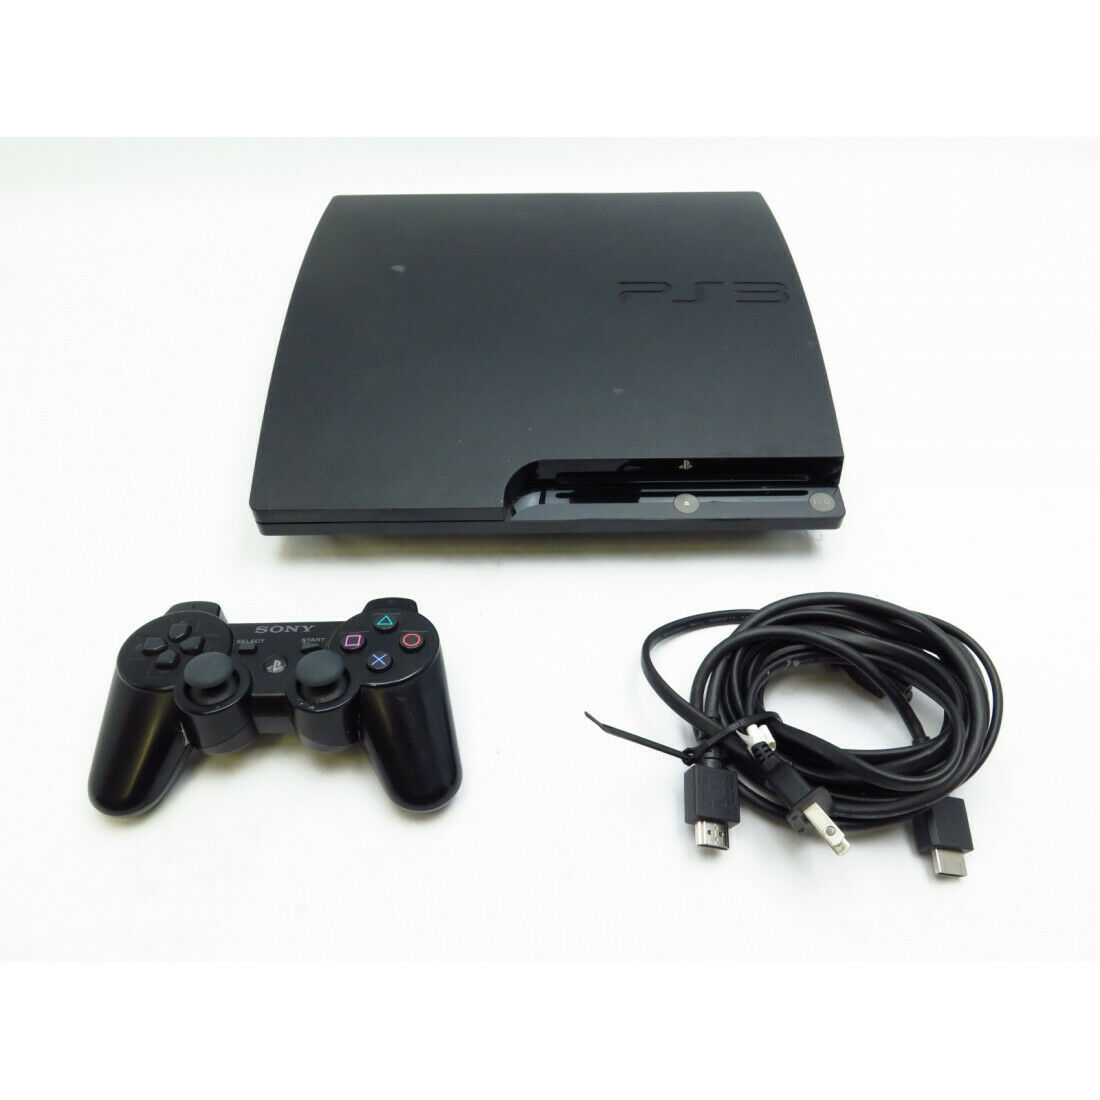 Sony CECH2001A PlayStation 3 Slim Black 120GB - 9818 - iCommerce on Web